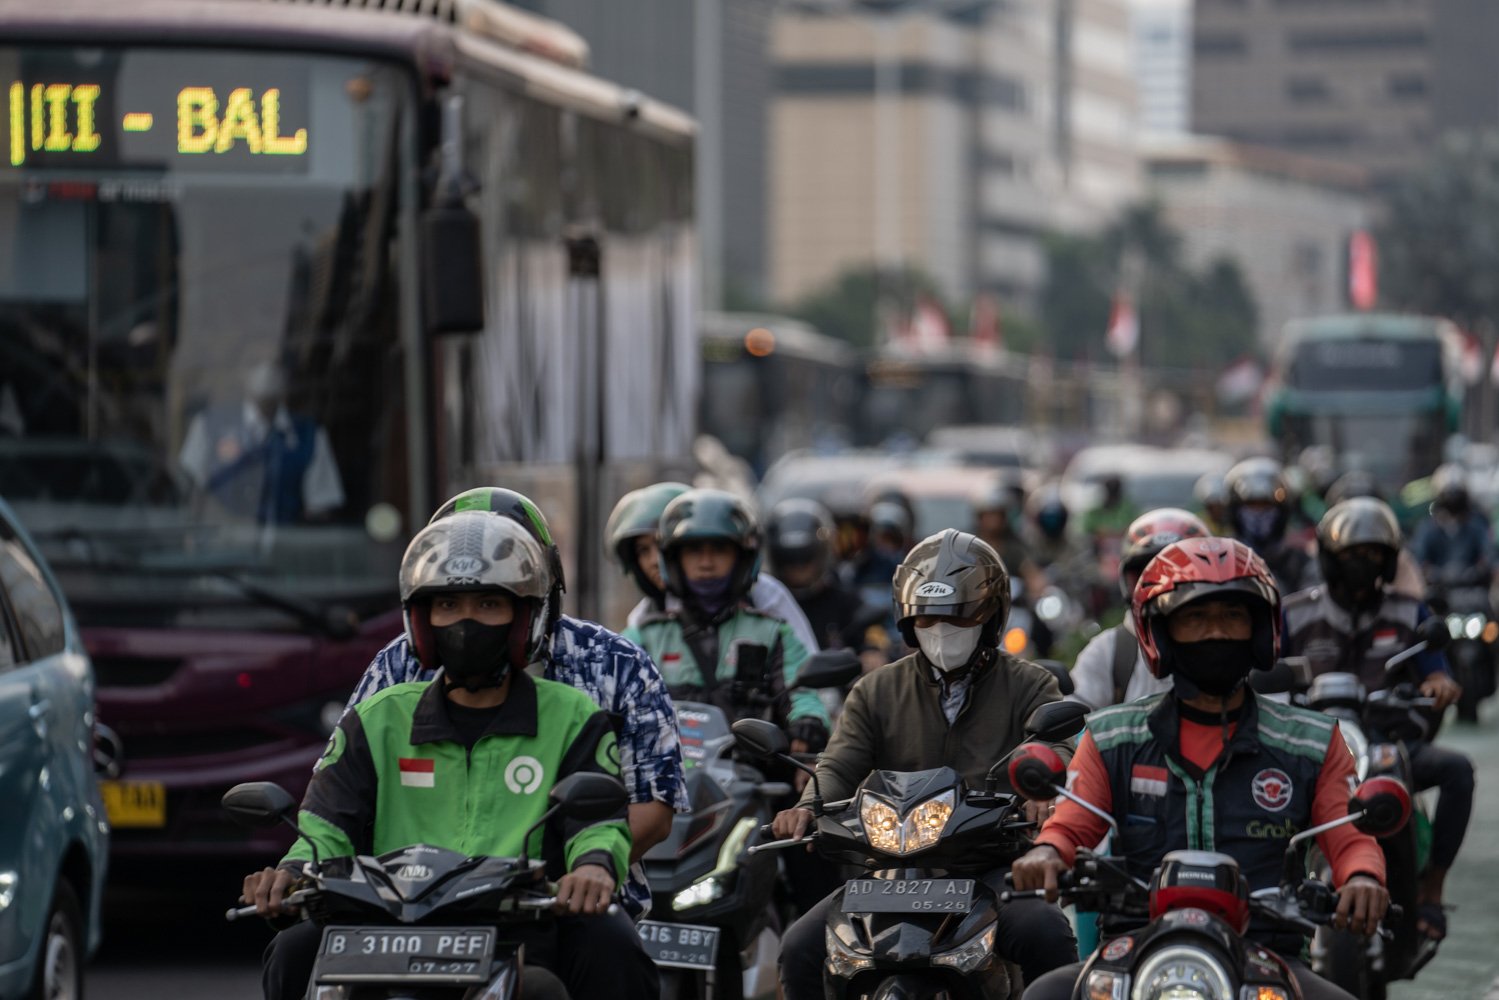 Pengendara motor melintas di sekitar Jalan MH Thamrin, Jakarta Pusat, Senin (14/8). Sebagian besar warga terlihat mengenakan masker. Seminggu terakhir ini polusi udara di Jabodetabek menjadi sorotan masyarakat. Kualitas udara di Jakarta masuk kategori tidak sehat.